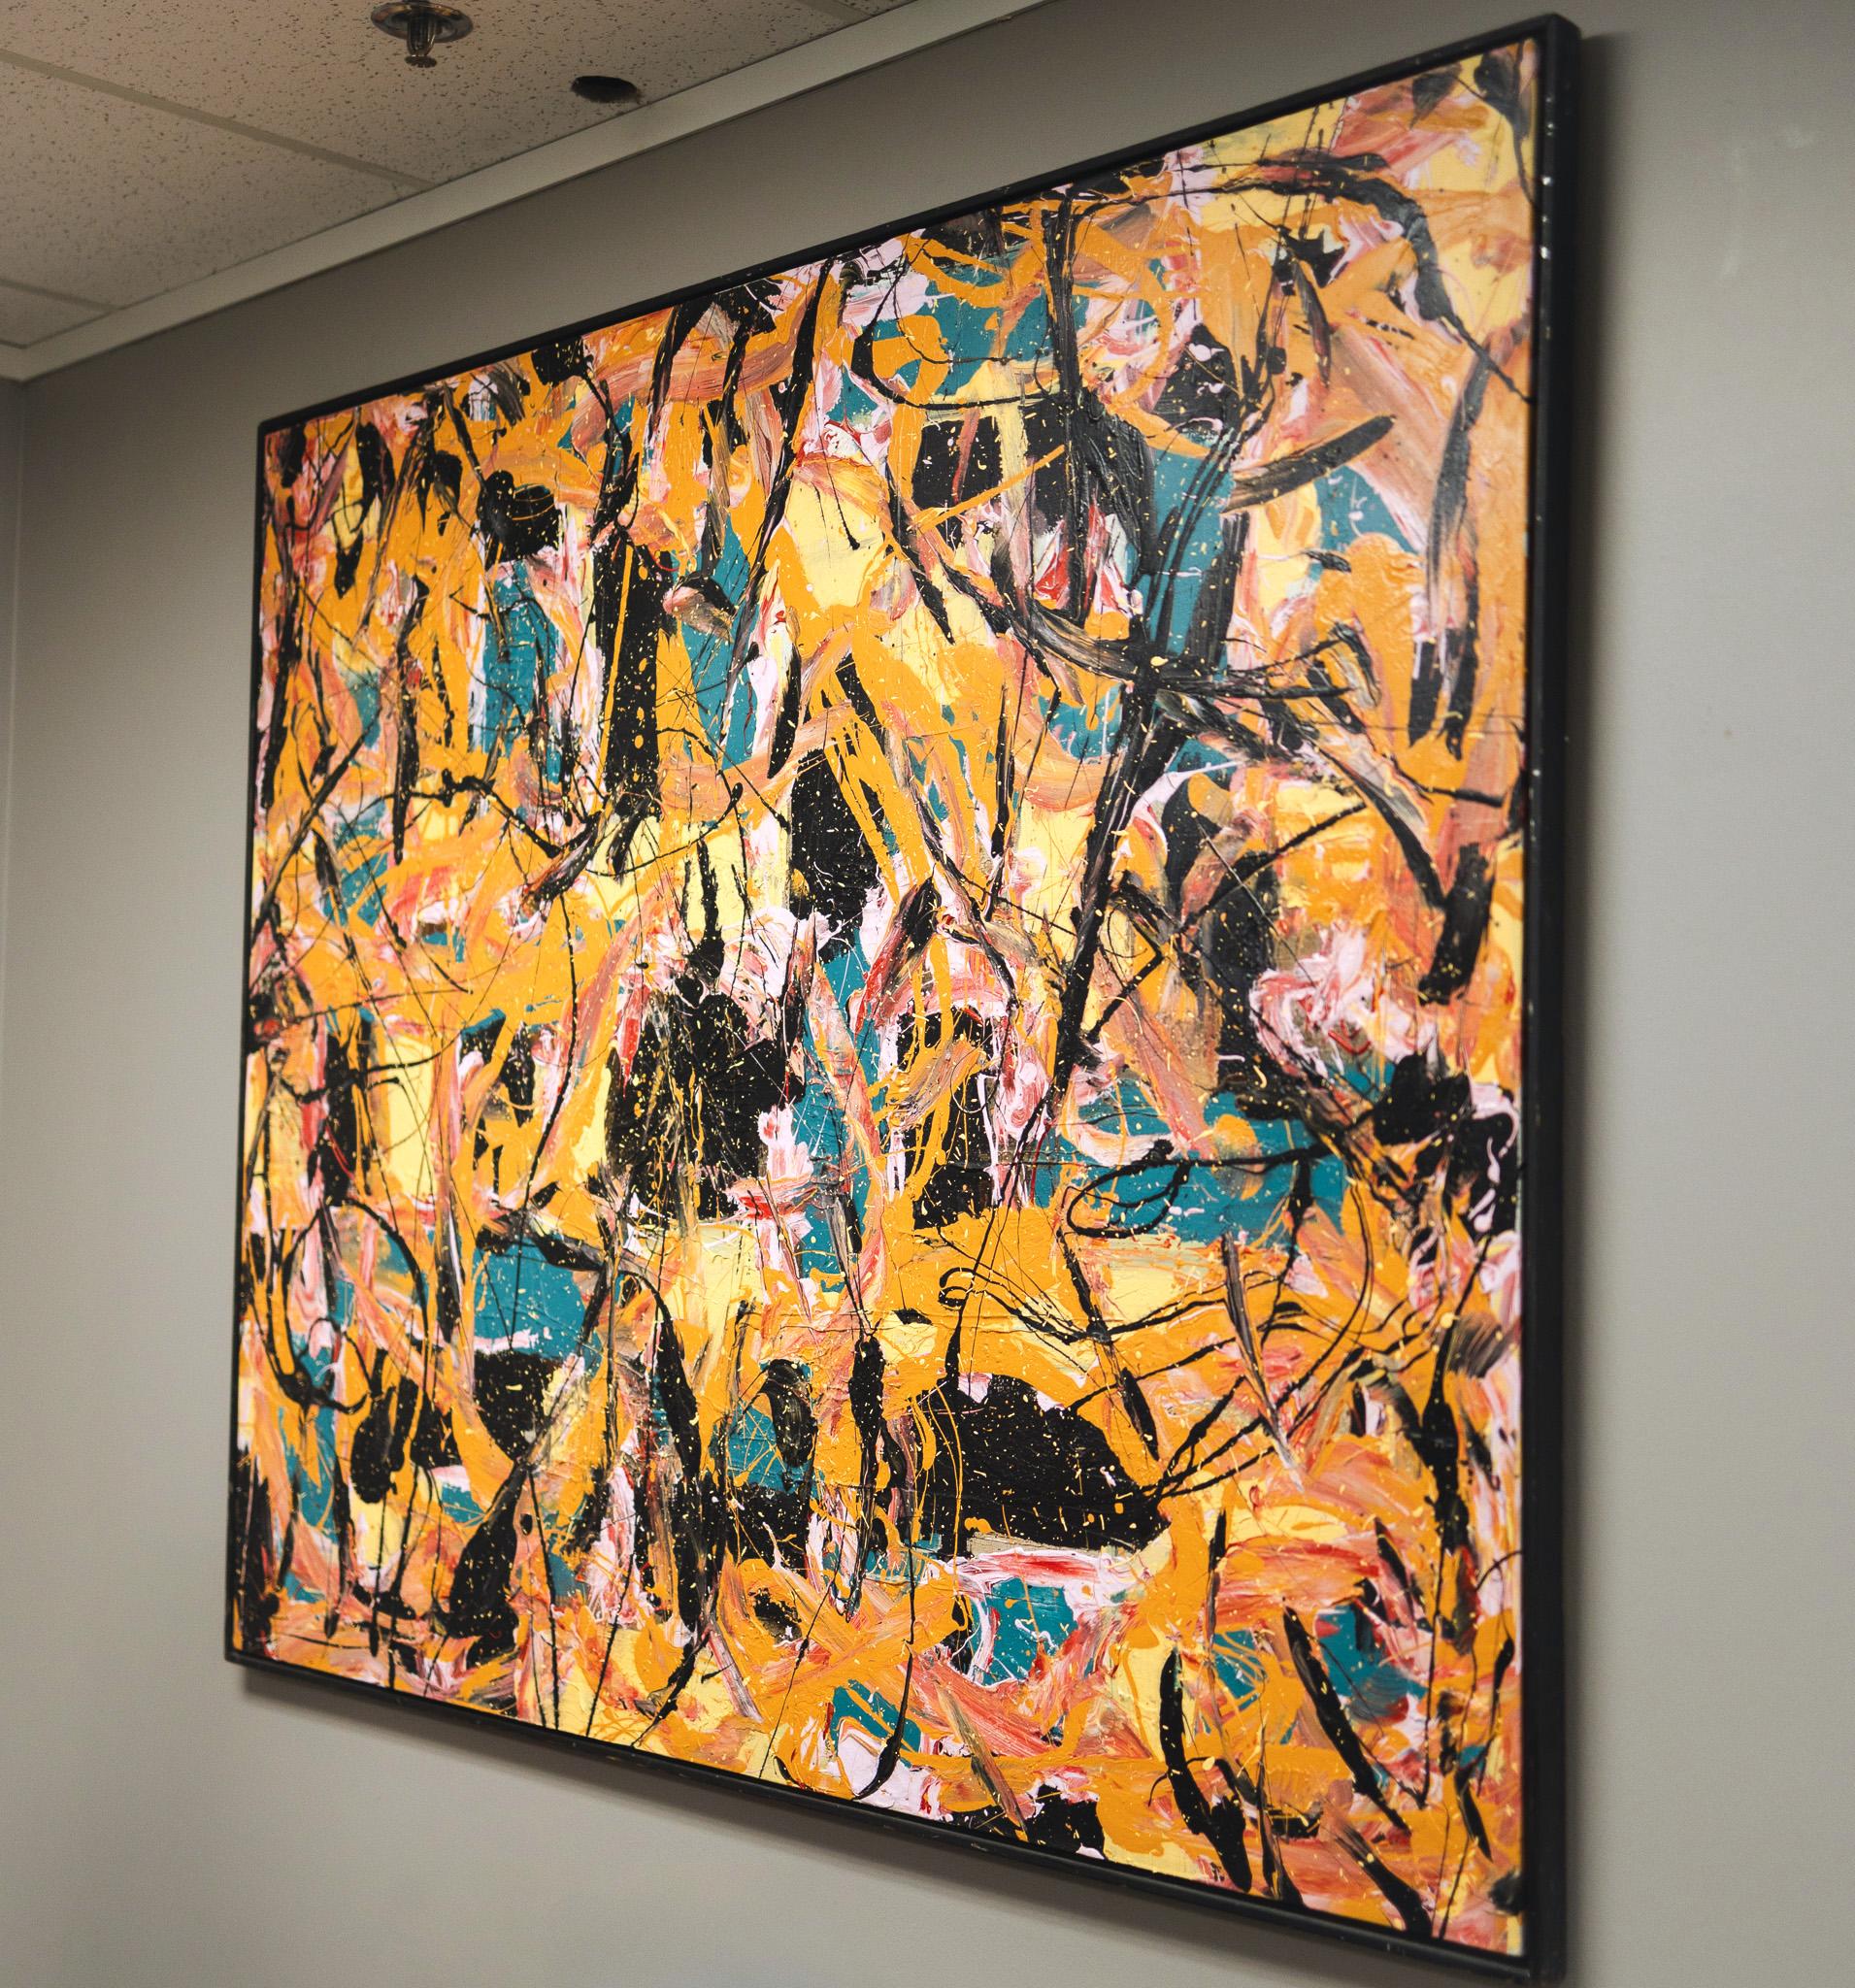 Abstrakt in Schwarz, Gelb, Orange, Rosa und Teal (Abstrakter Expressionismus), Painting, von Jack Nichols